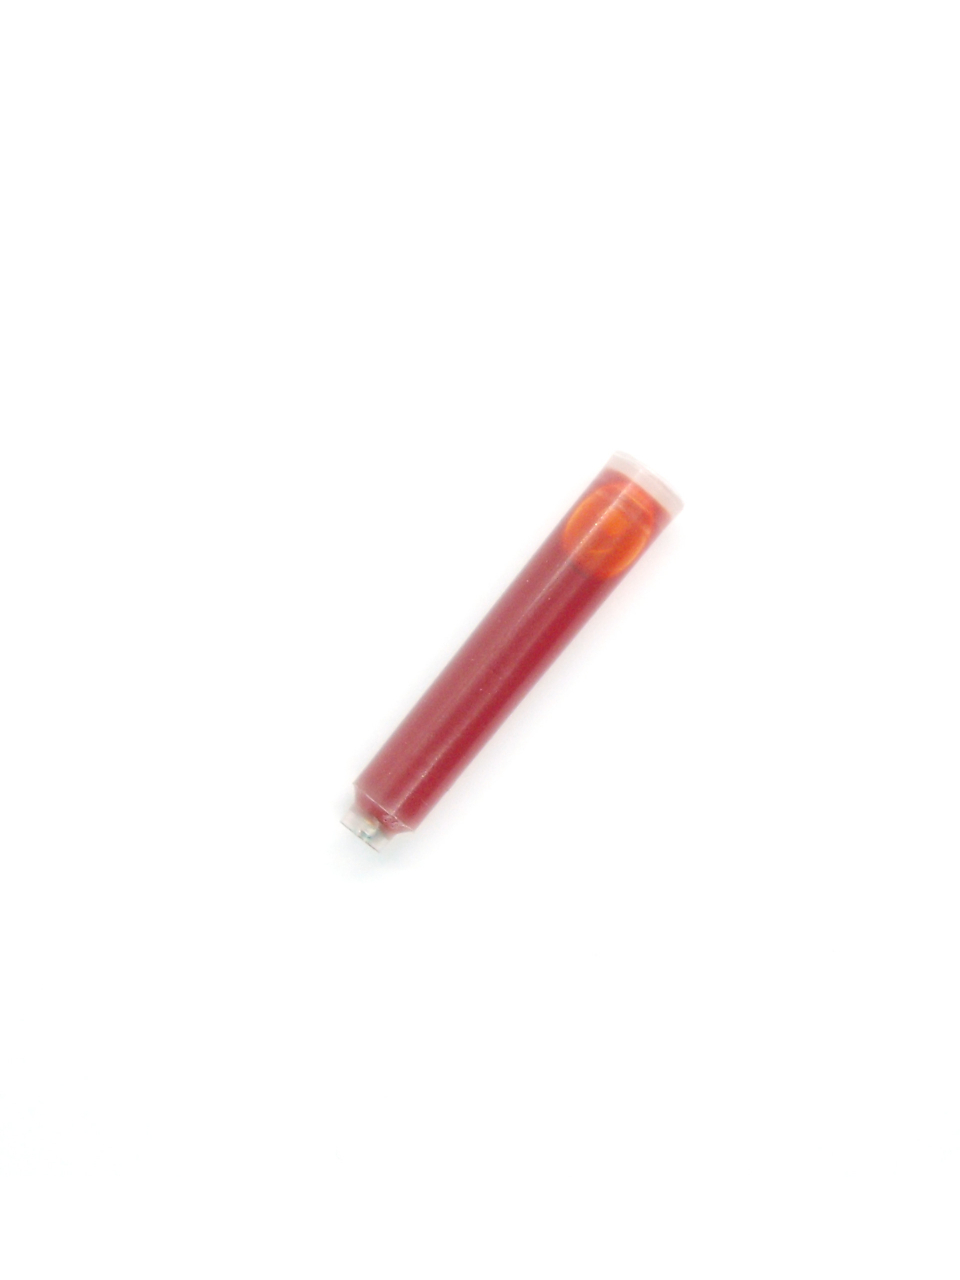 Ink Cartridges For Retro 51 Fountain Pens (Orange)